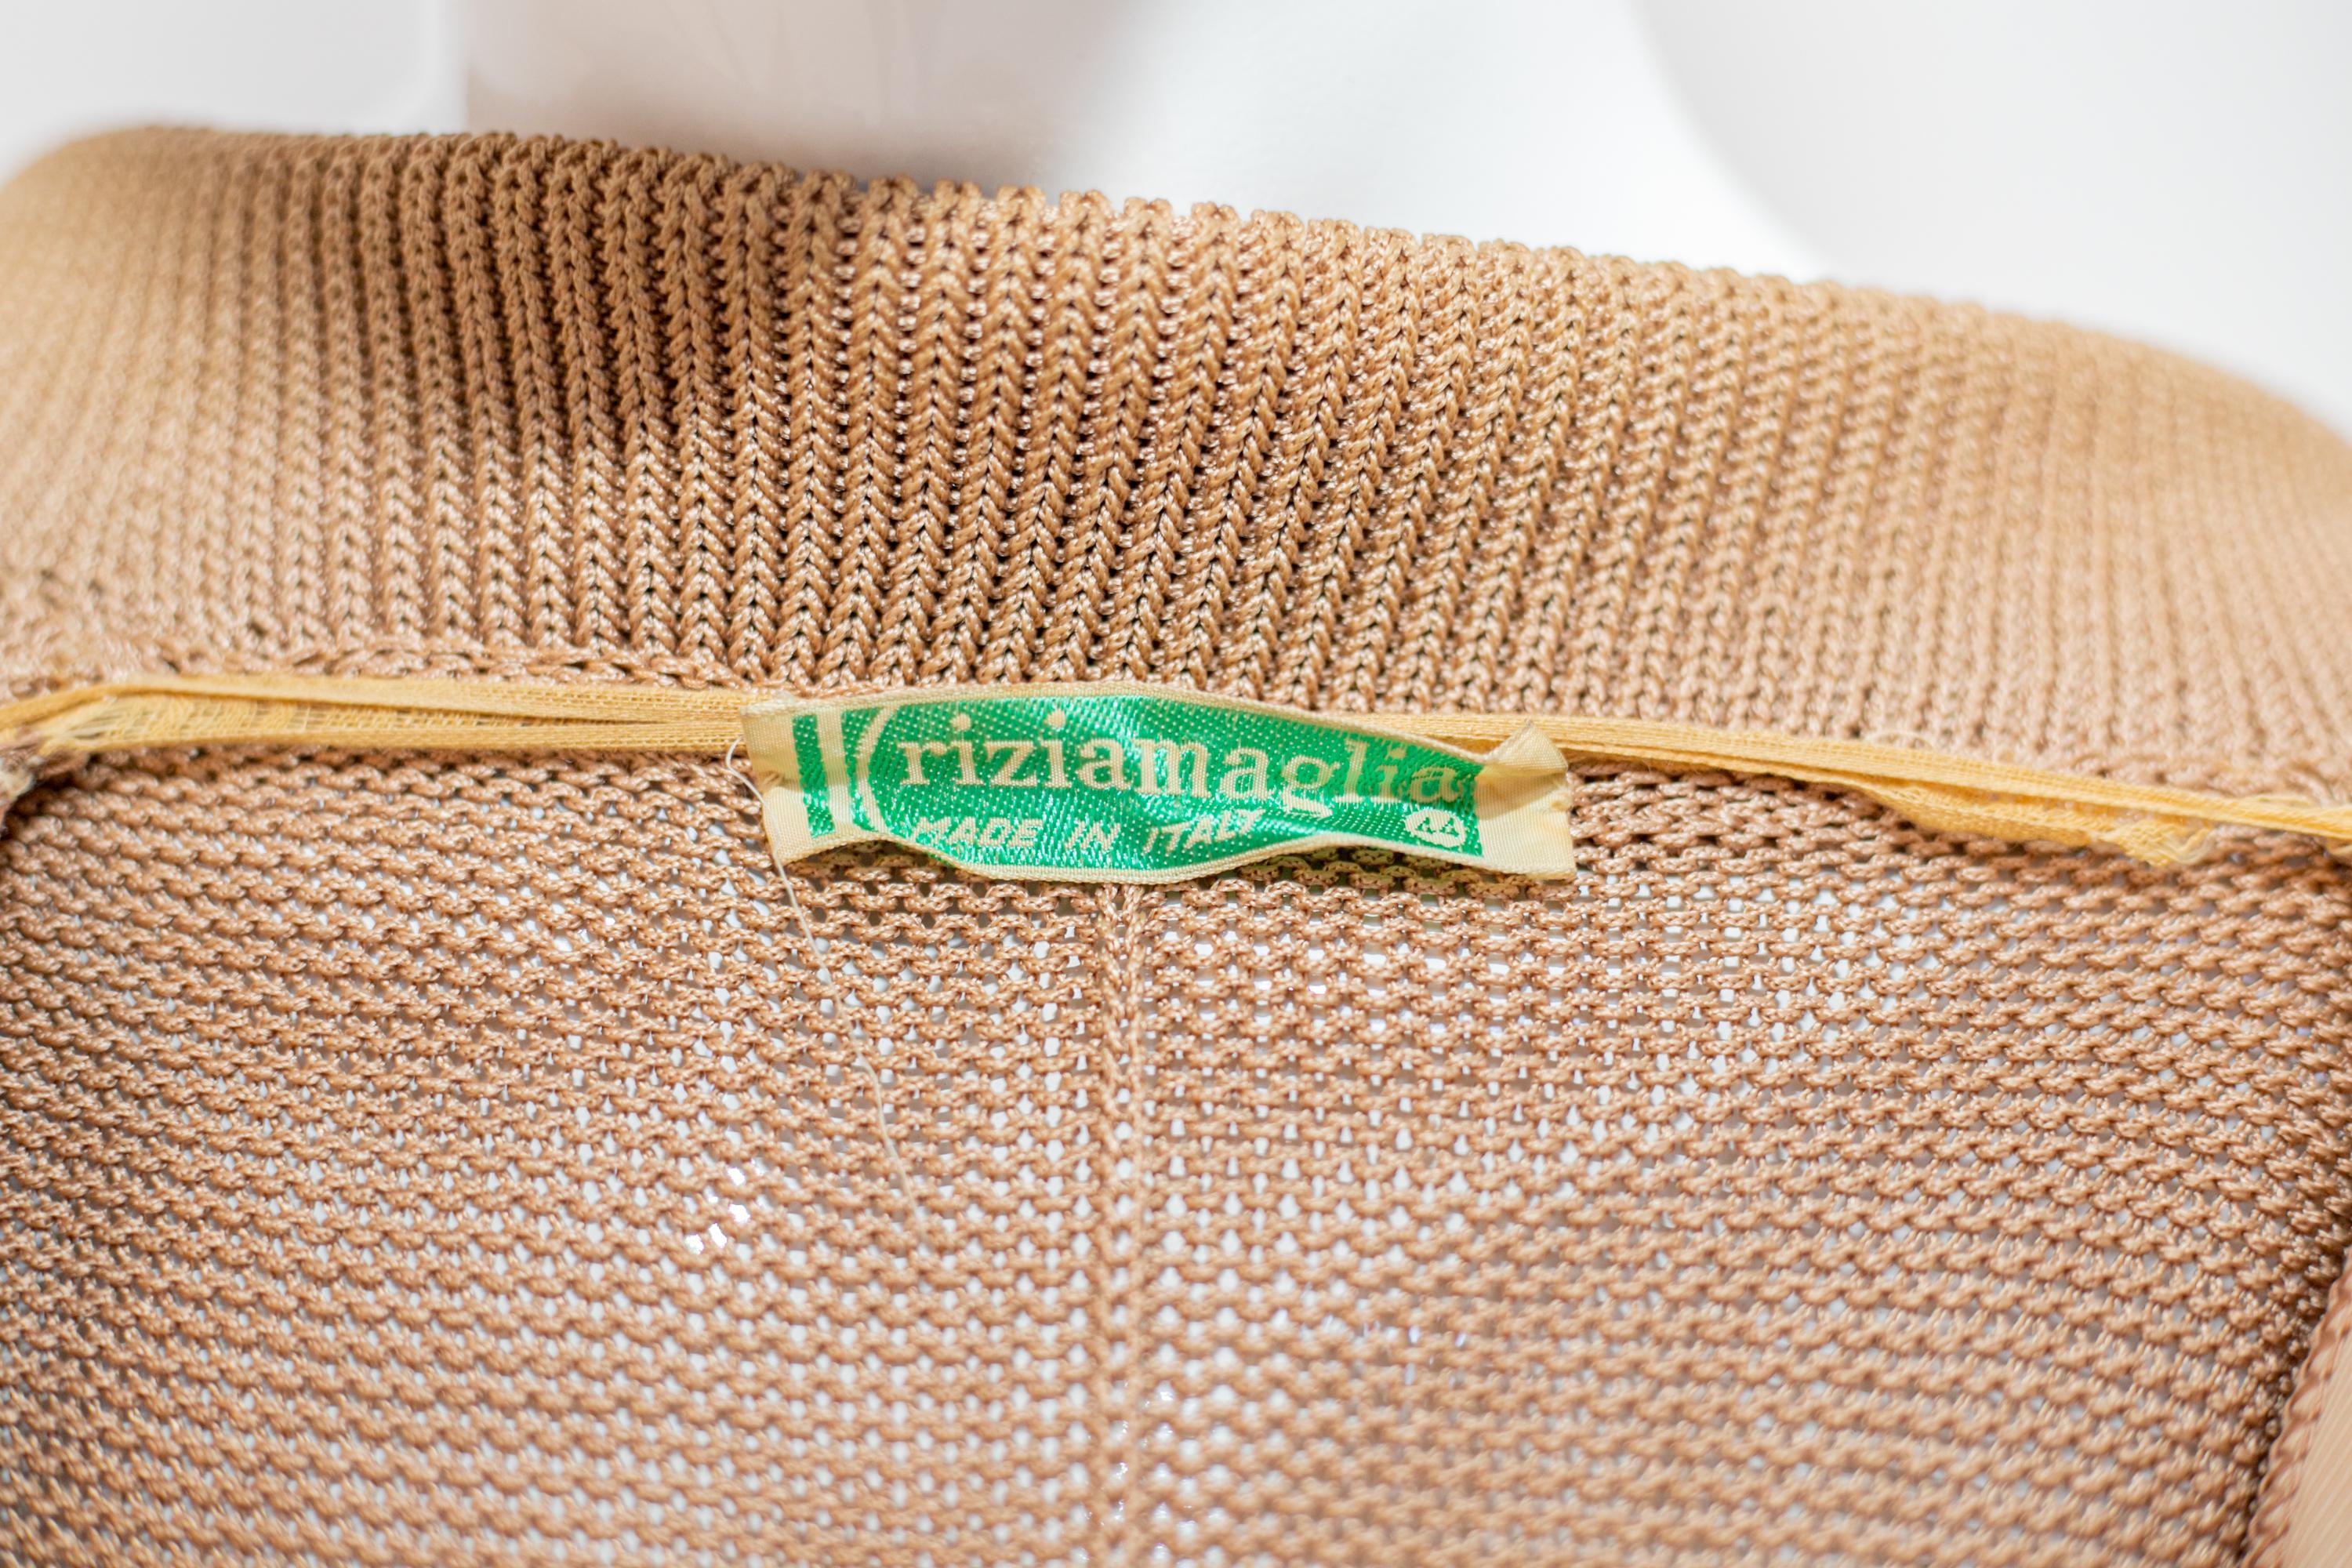 Joli cardigan vintage en coton de Krizia des années 1990, fabriqué en Italie.
ÉTIQUETTE ORIGINALE.
Le cardigan est entièrement réalisé en coton camel et possède des manches longues avec des poignets souples mais plus étroits au niveau du poignet. Le